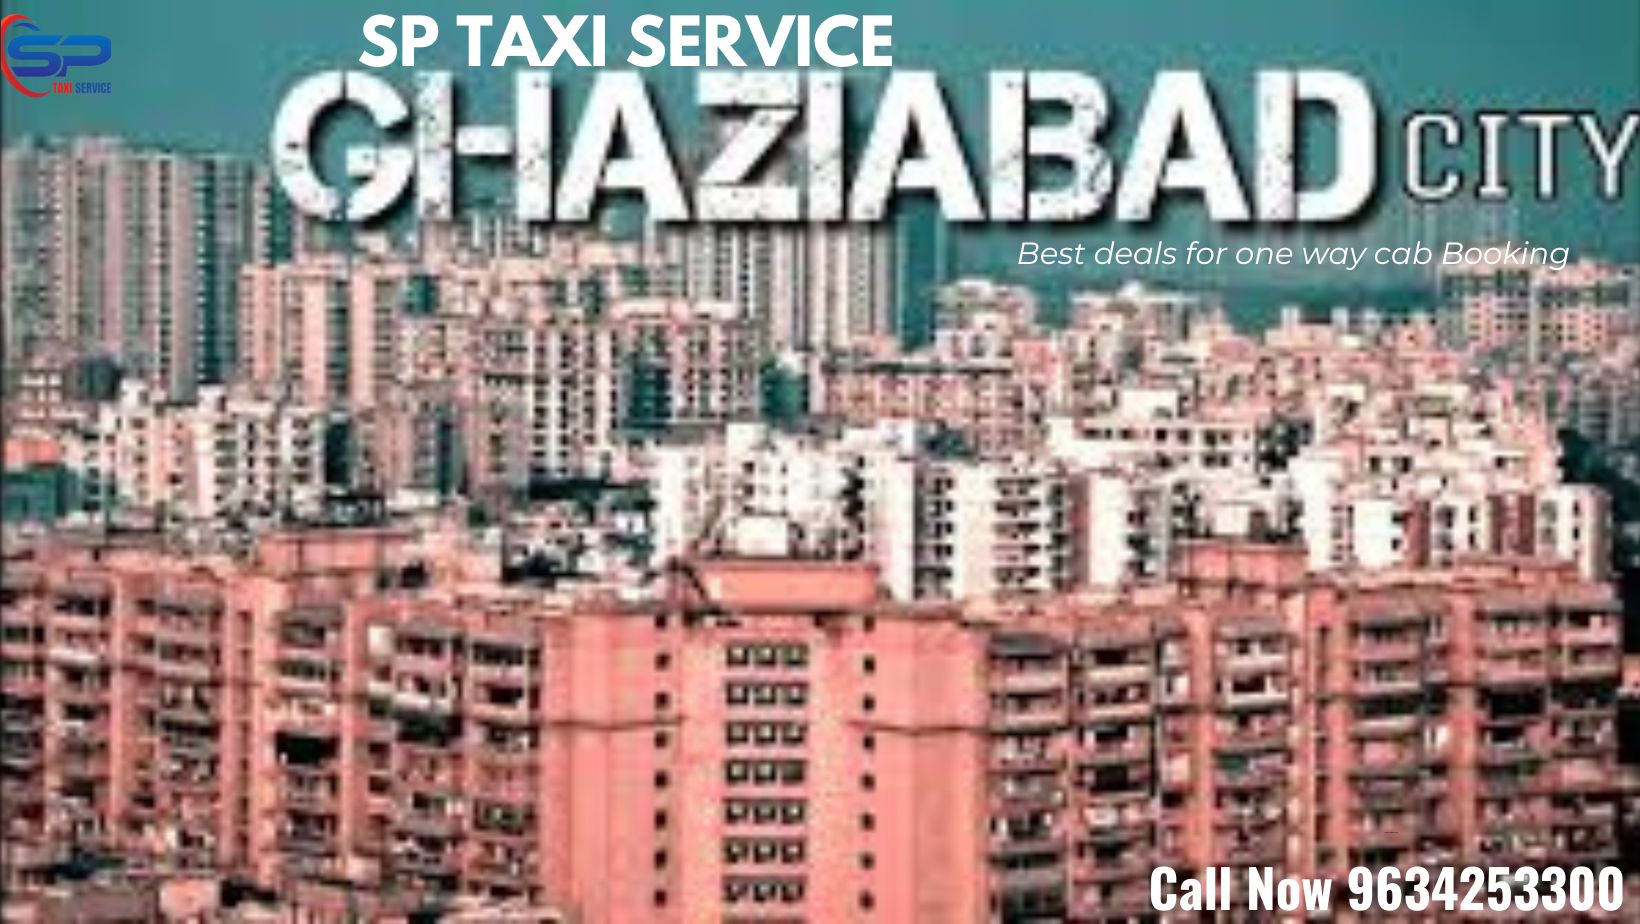 Ghaziabad to Gauchar Taxi